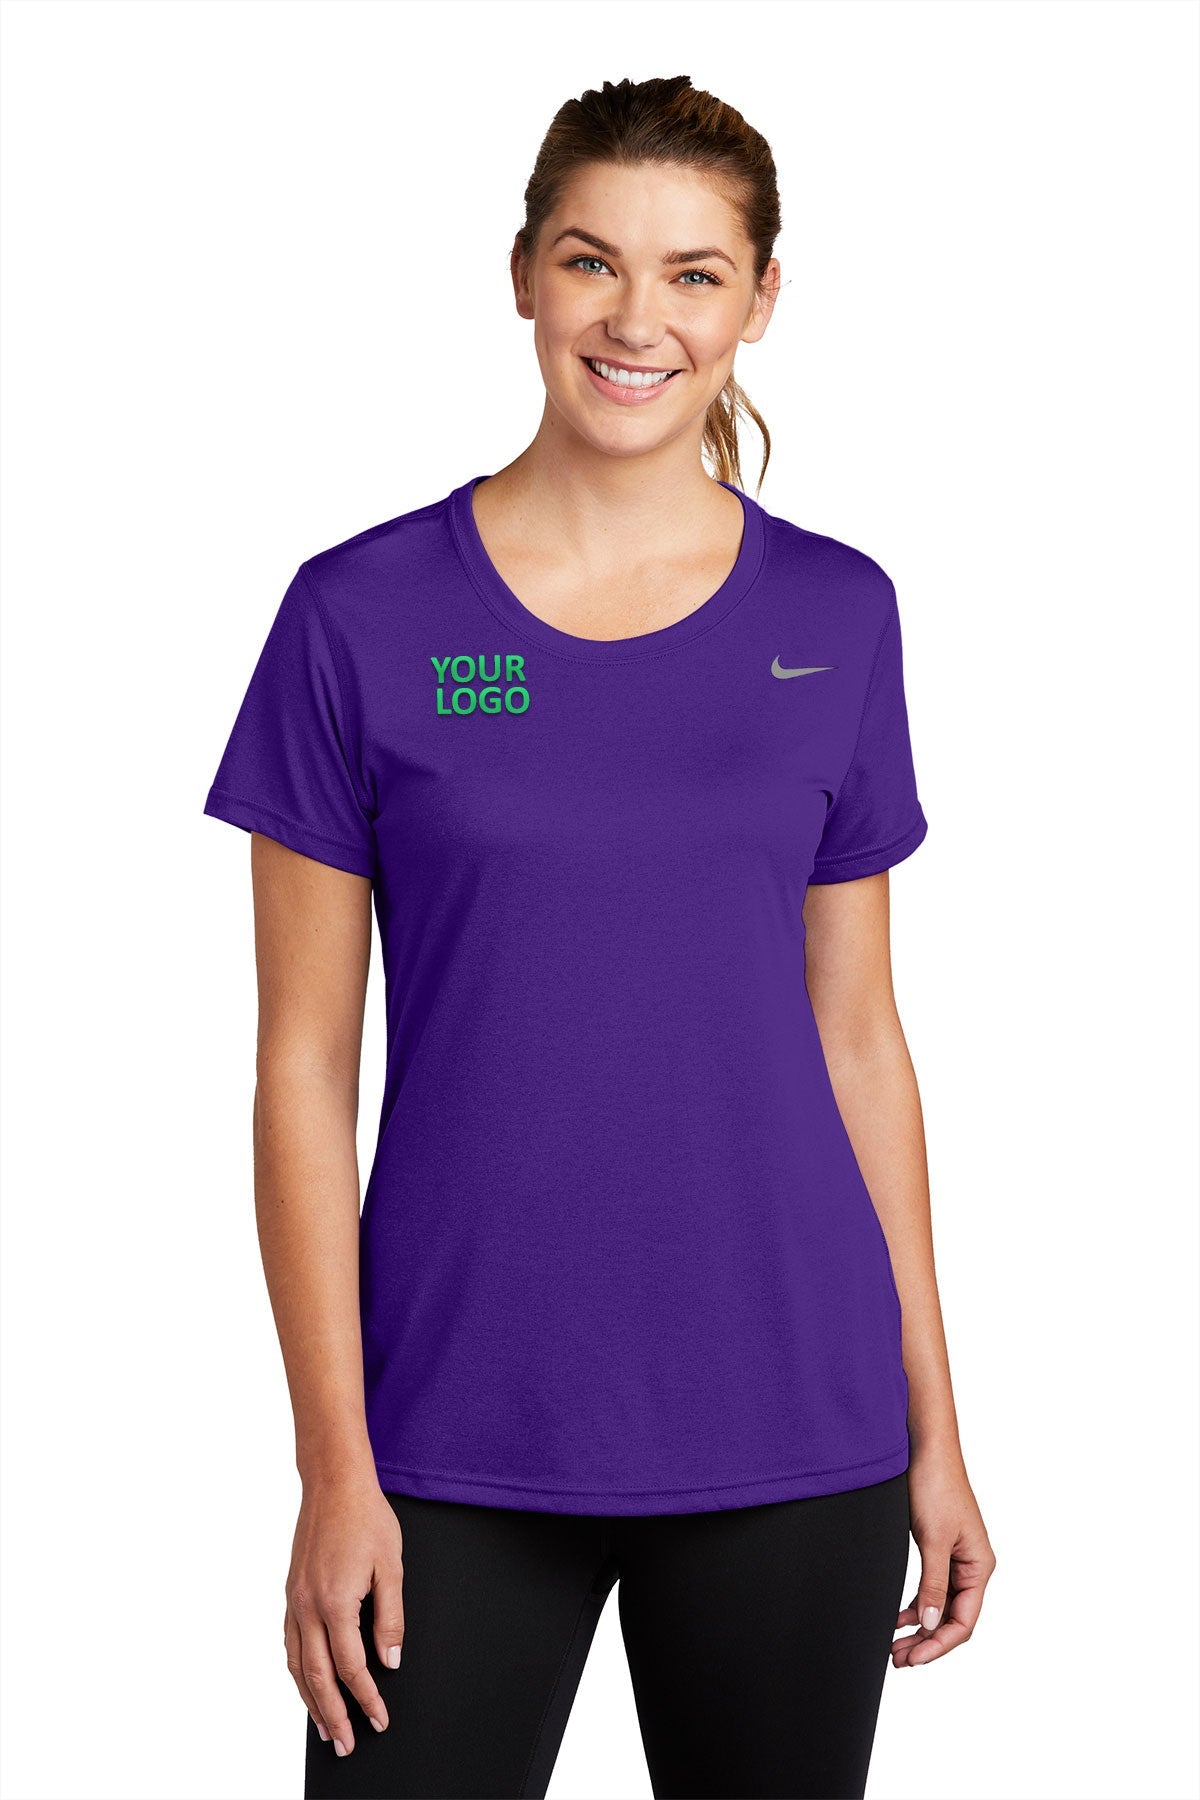 Nike Ladies Team rLegend Customized Tee's, Court Purple